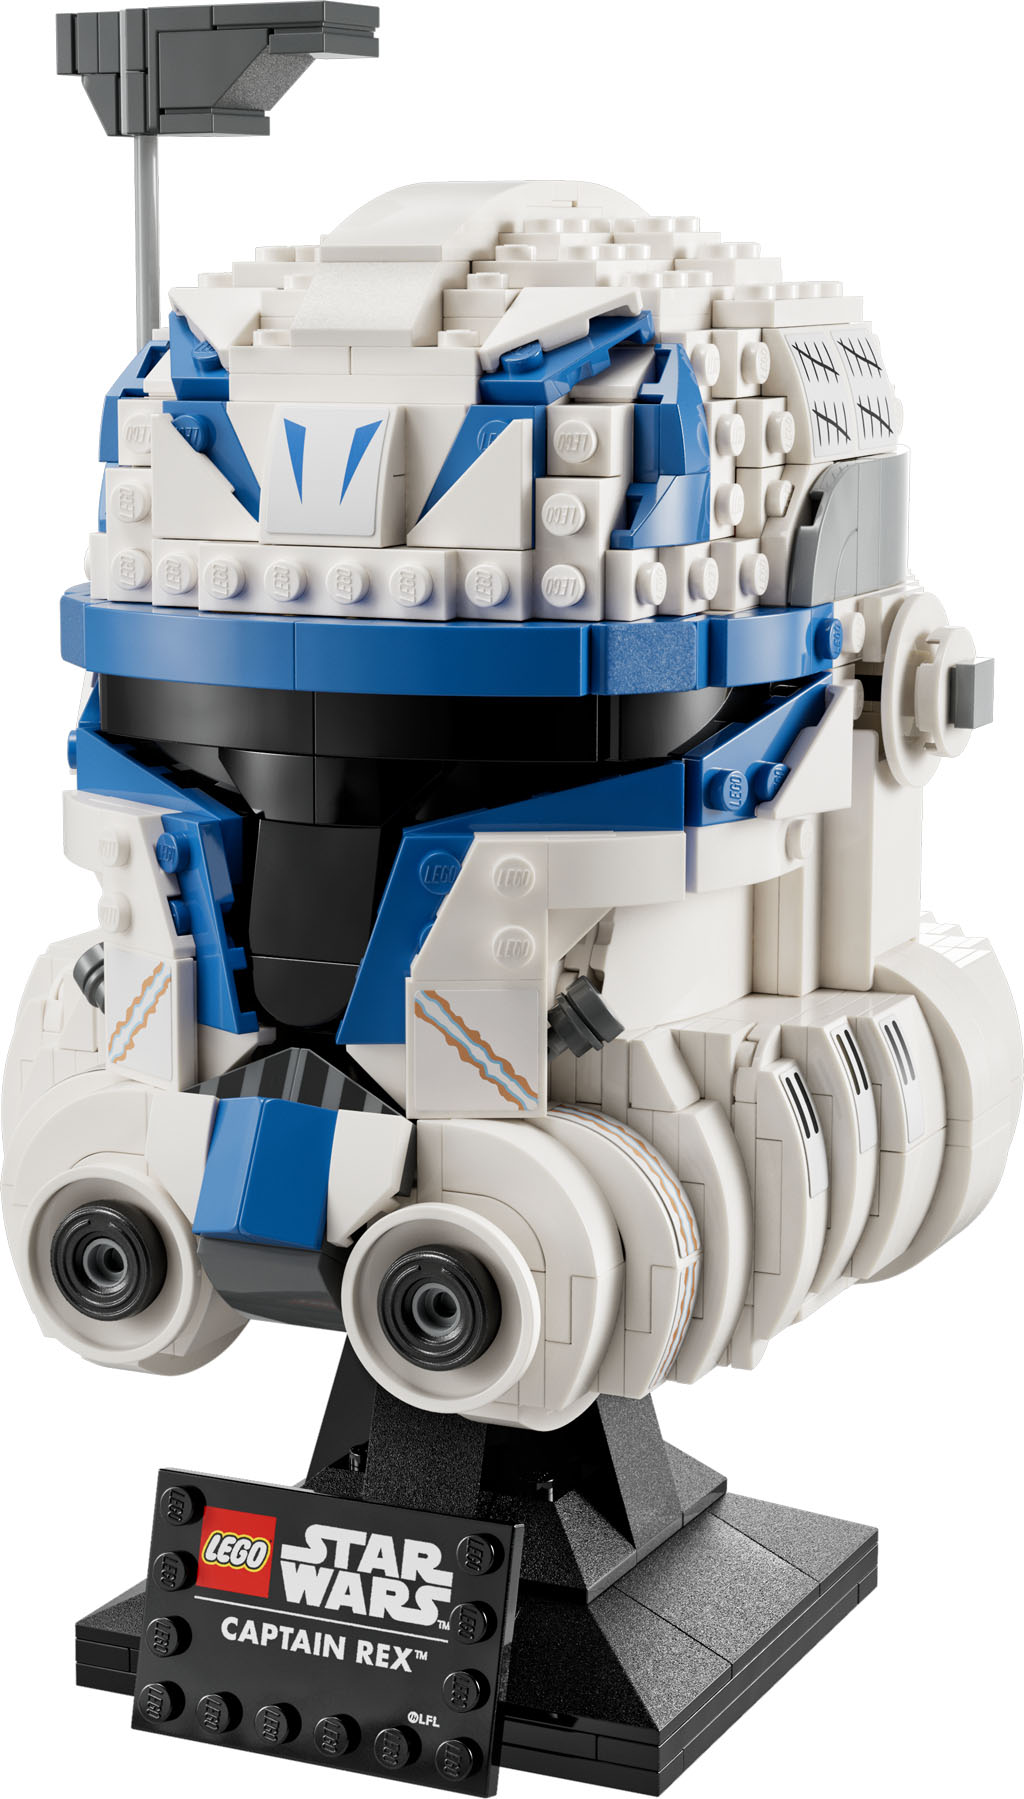 LEGO Star Wars Clone Commander Cody Helmet 75350 by LEGO Systems